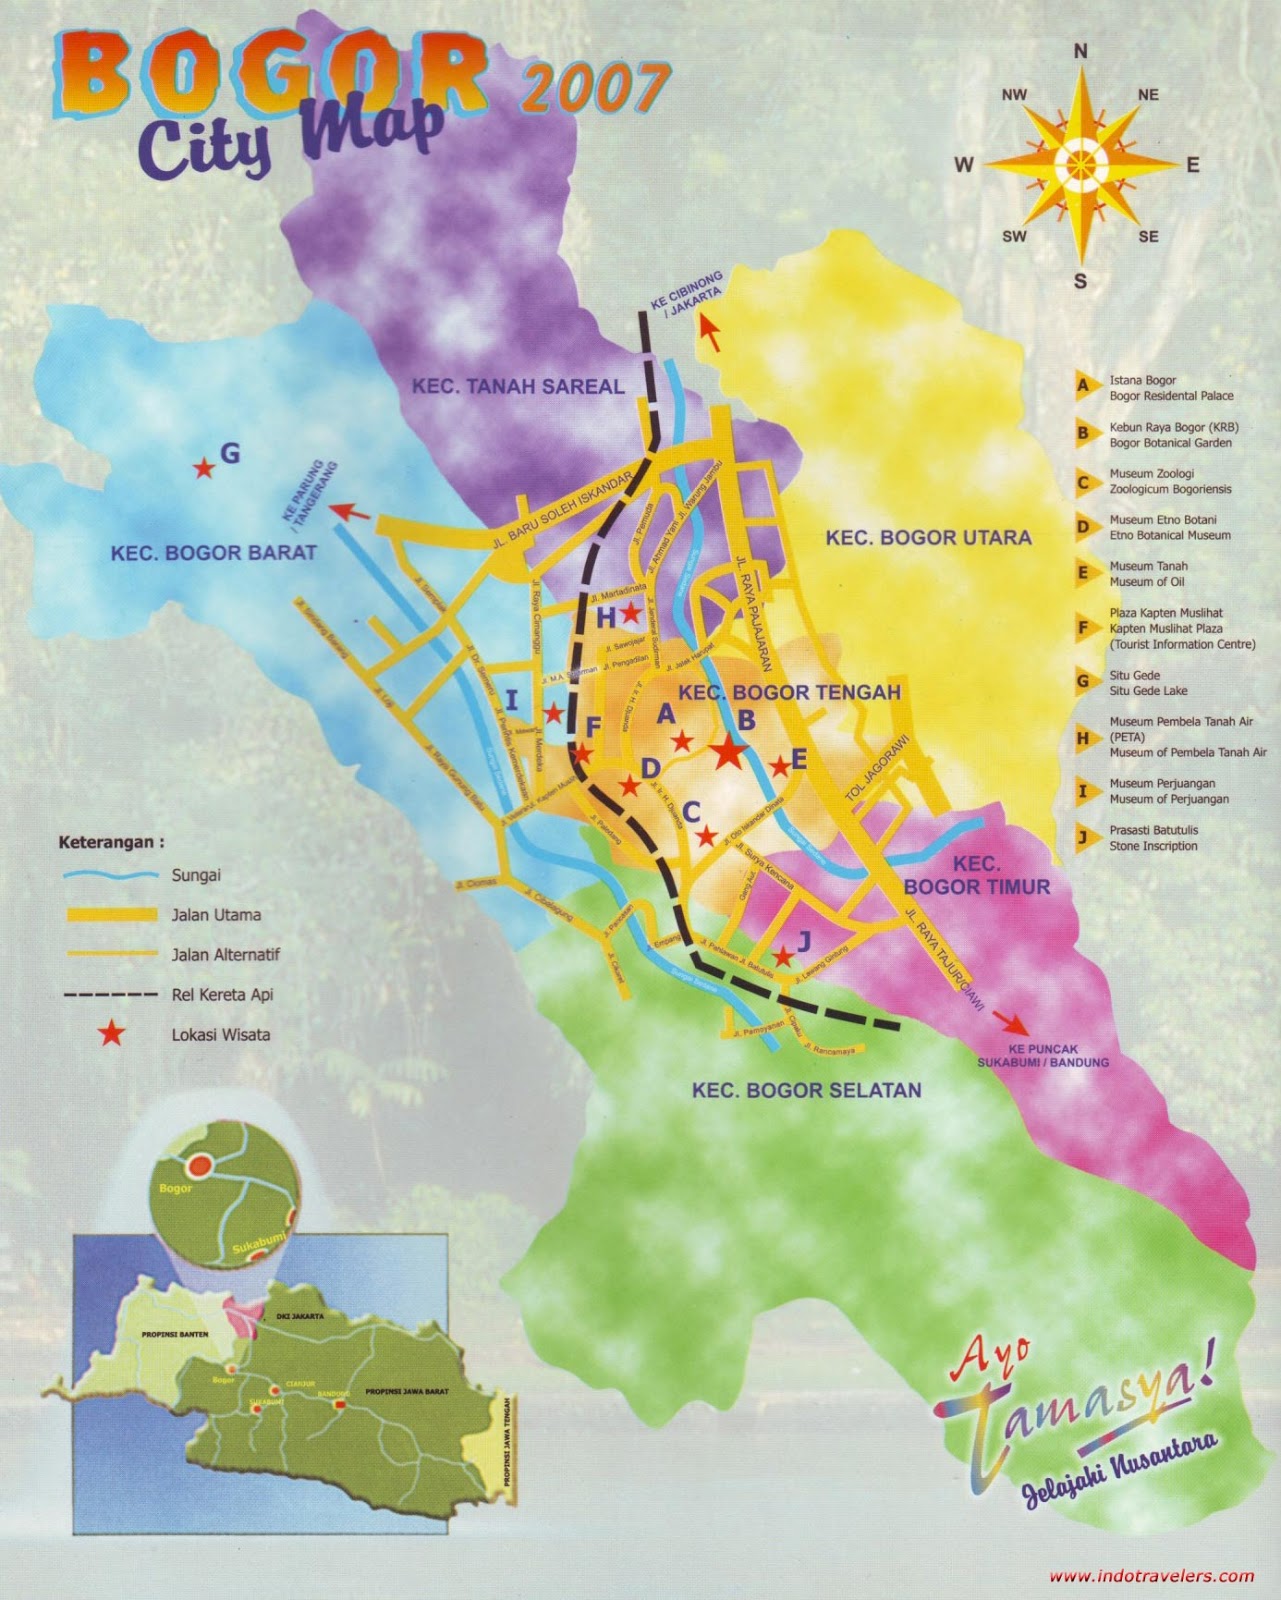  Peta  Lengkap  Indonesia Peta  Wisata Kota Bogor 